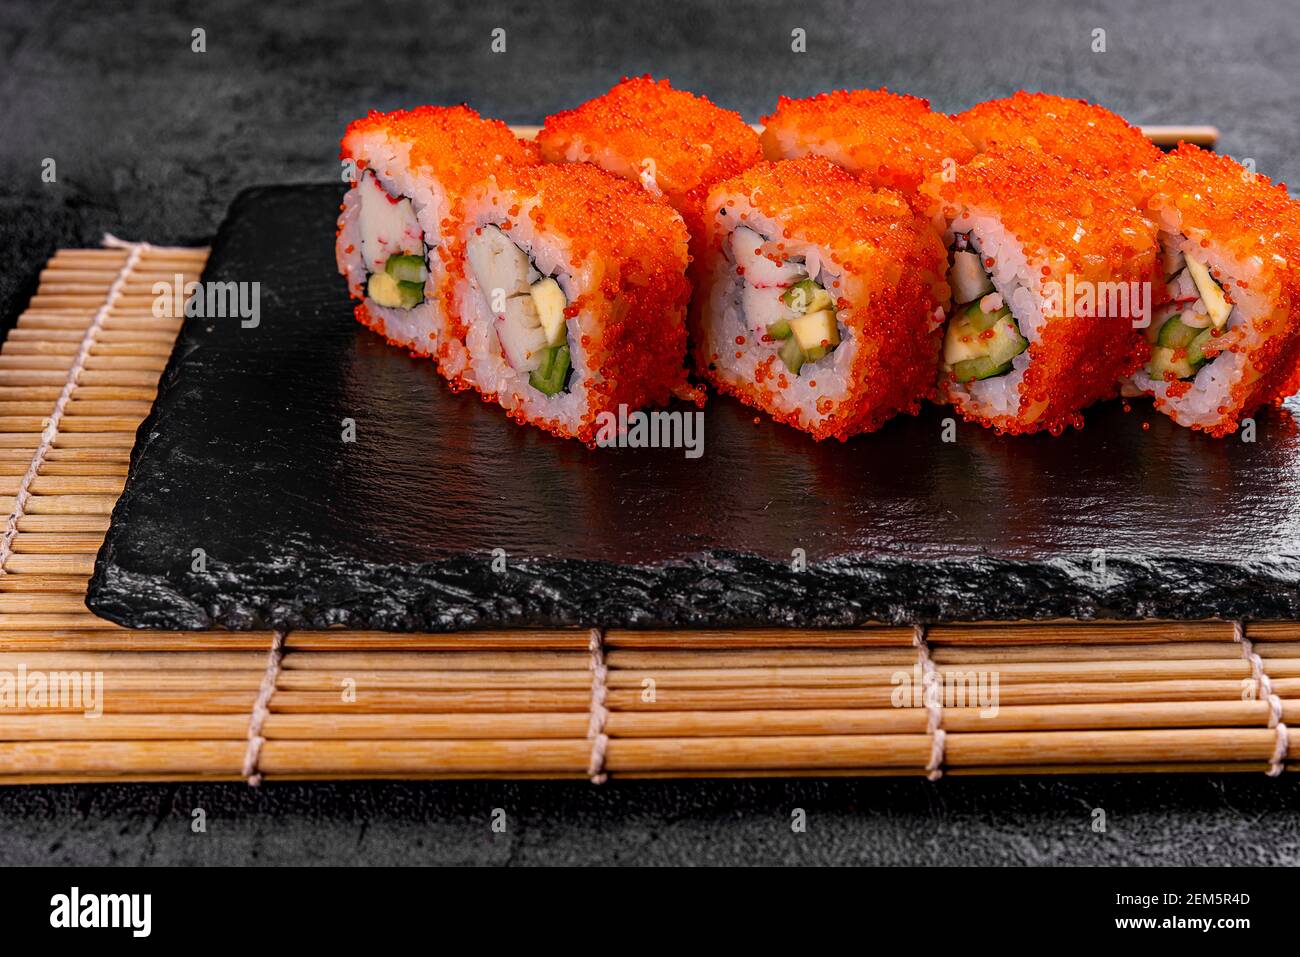 Rotolo di sushi Golden dragon con granchio, salmone, cetriolo, semi di sesamo e formaggio cremoso su sfondo nero. Vista dall'alto Foto Stock